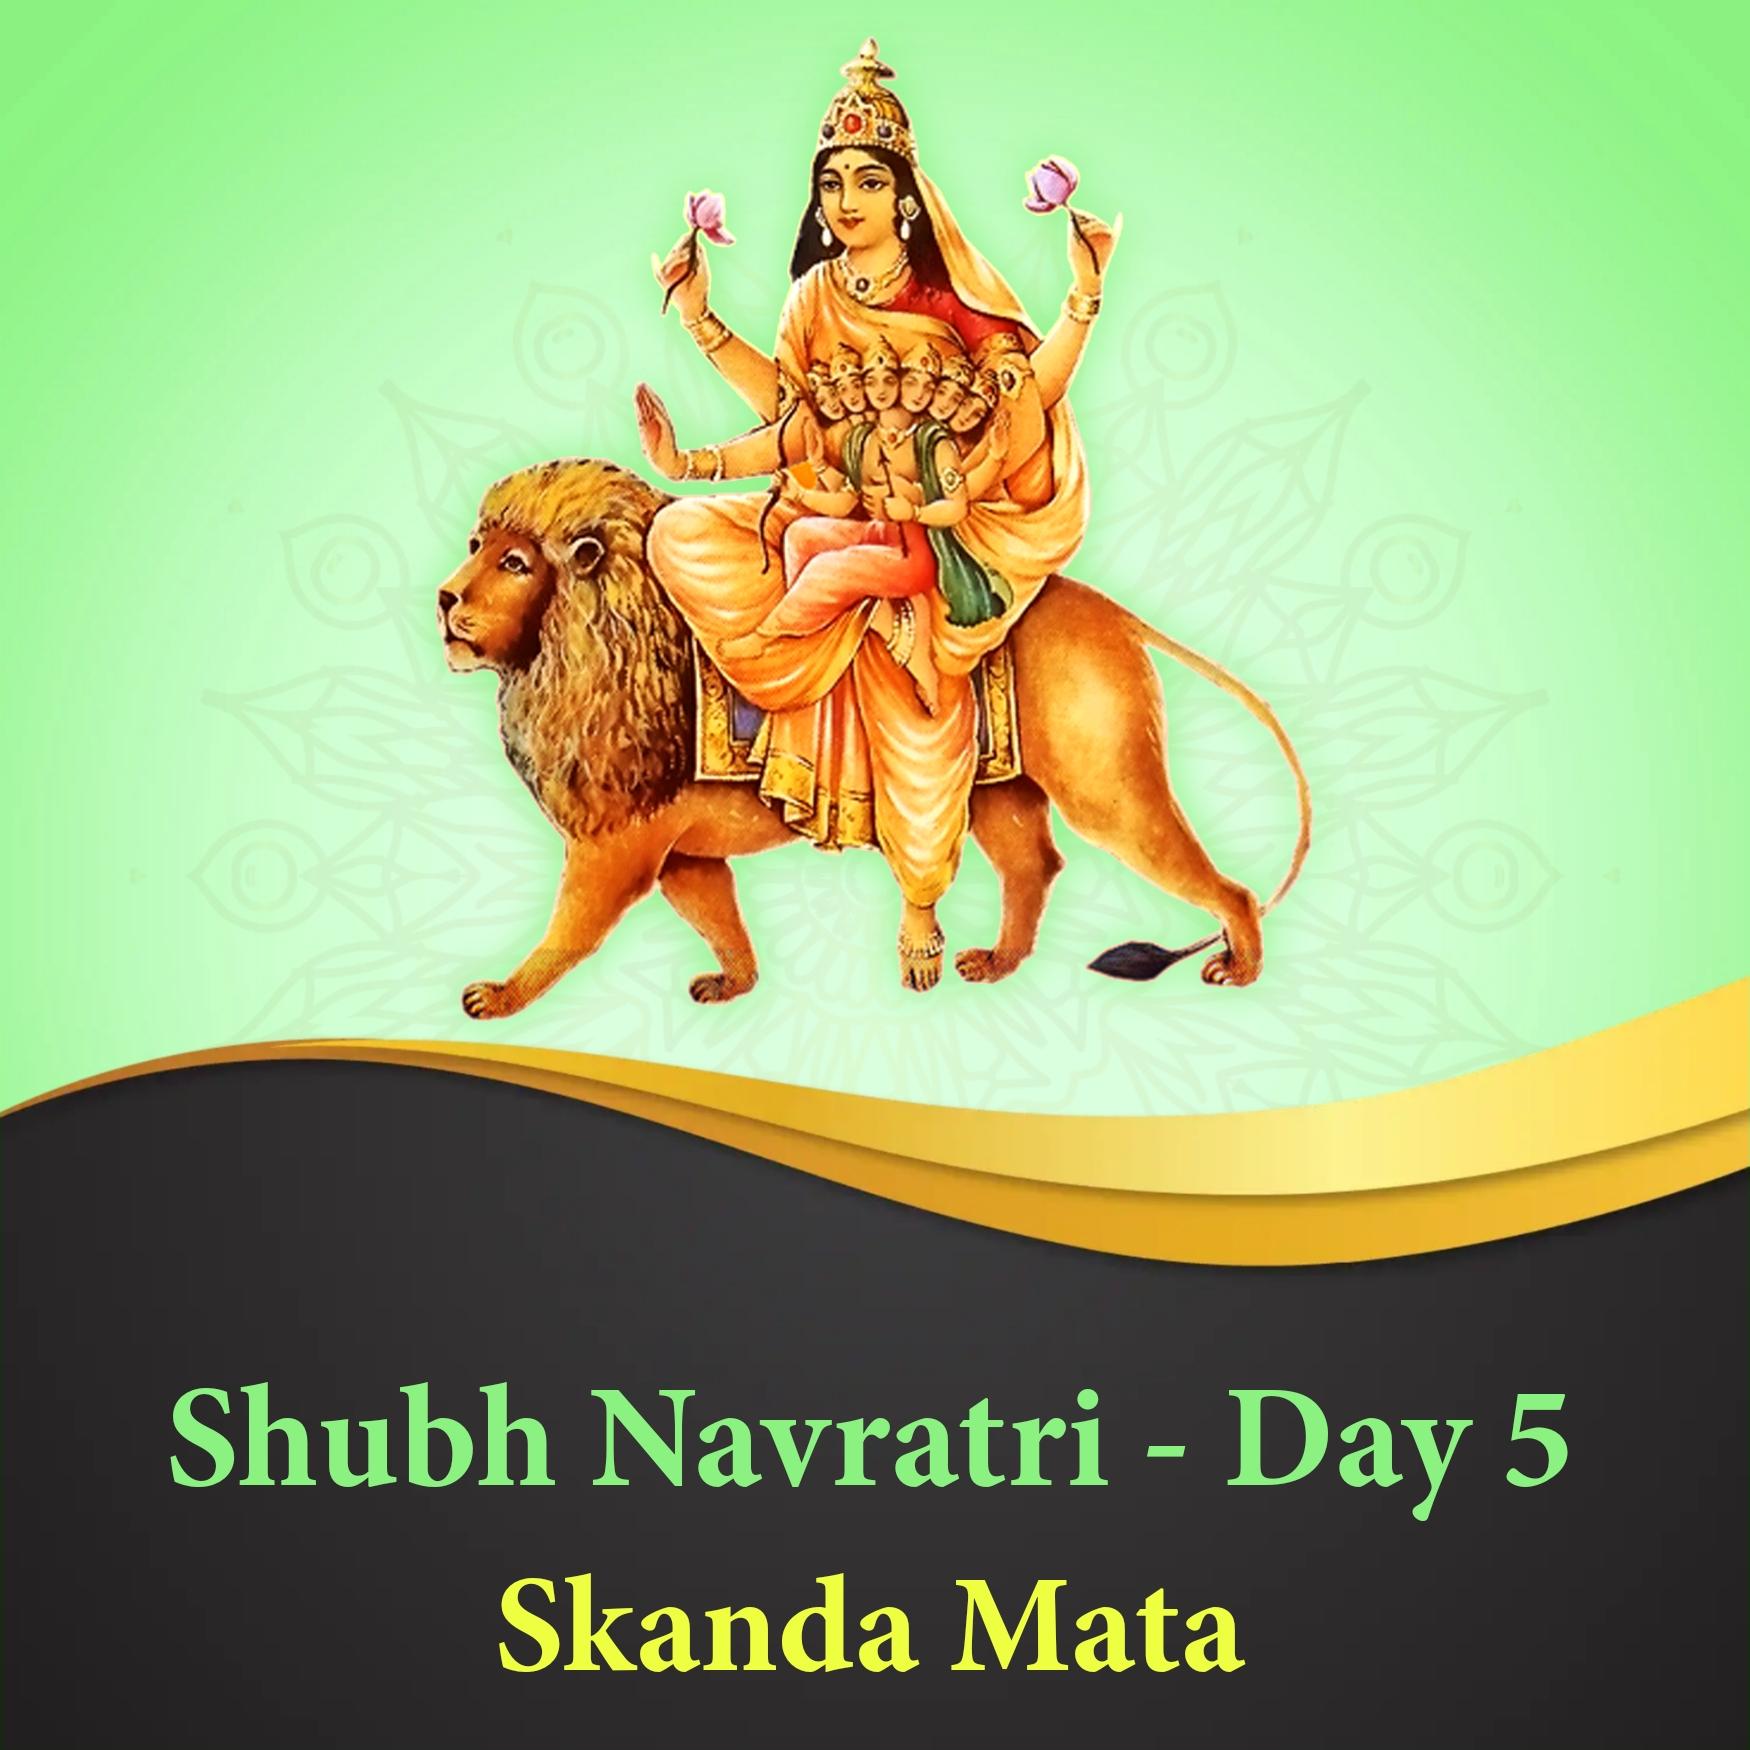 Shubh Navratri Day 5 Skanda Mata Images